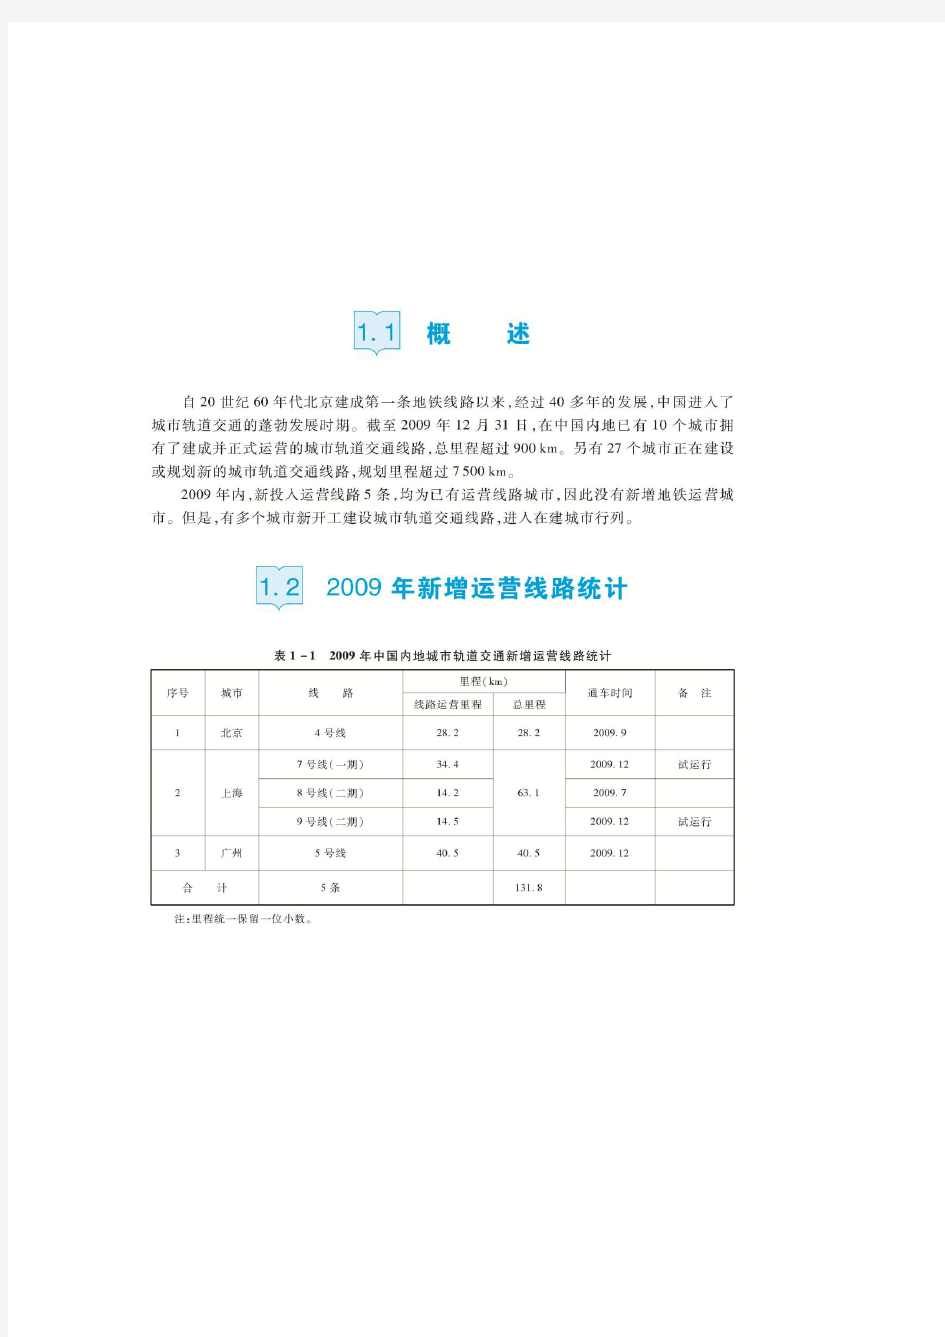 中国城市轨道交通年度报告2009第1章-统计